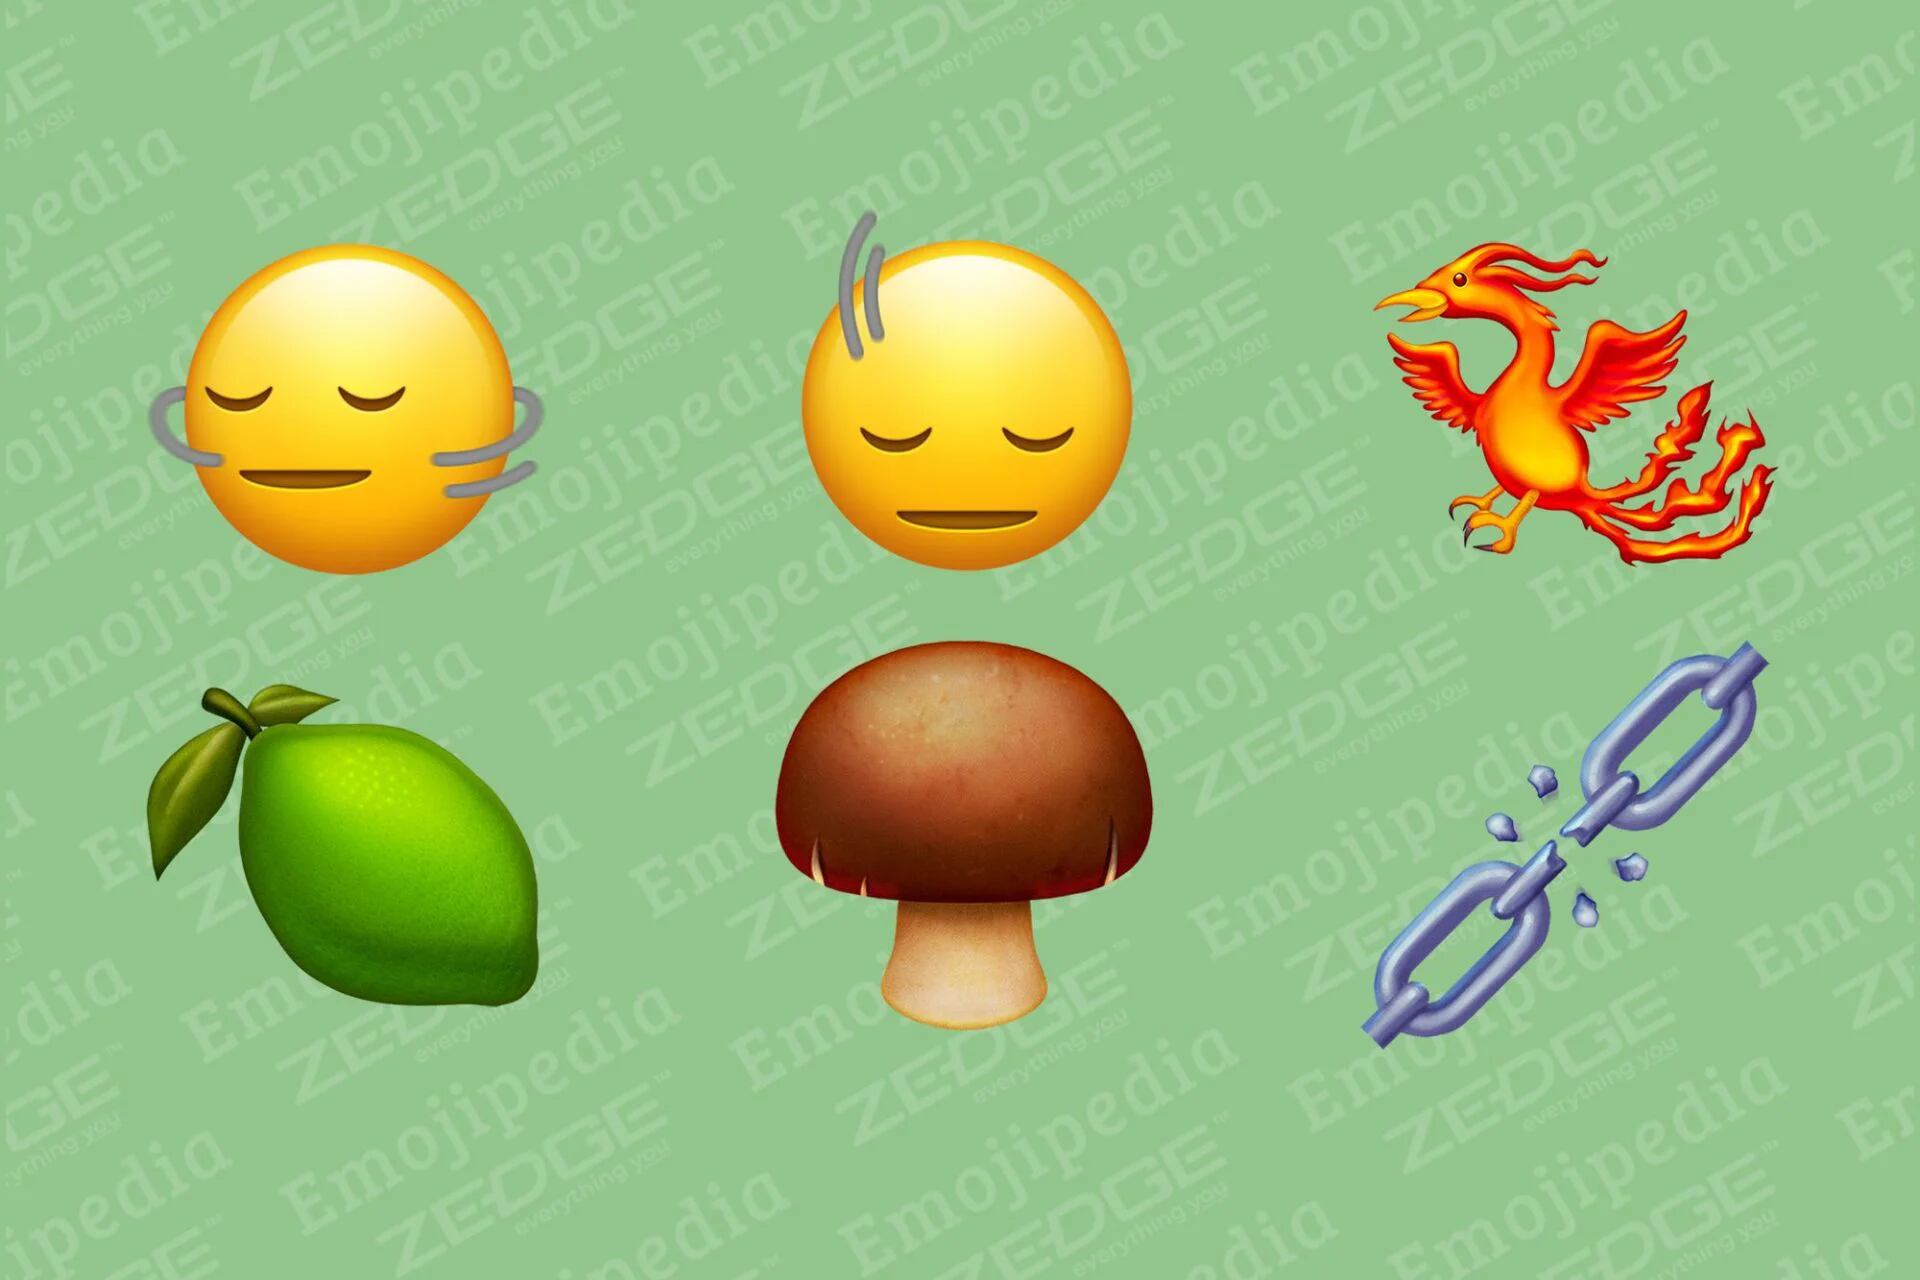 Los usuarios de WhatsApp podrán disfrutar de una amplia variedad de nuevos emojis. (Emojipedia)